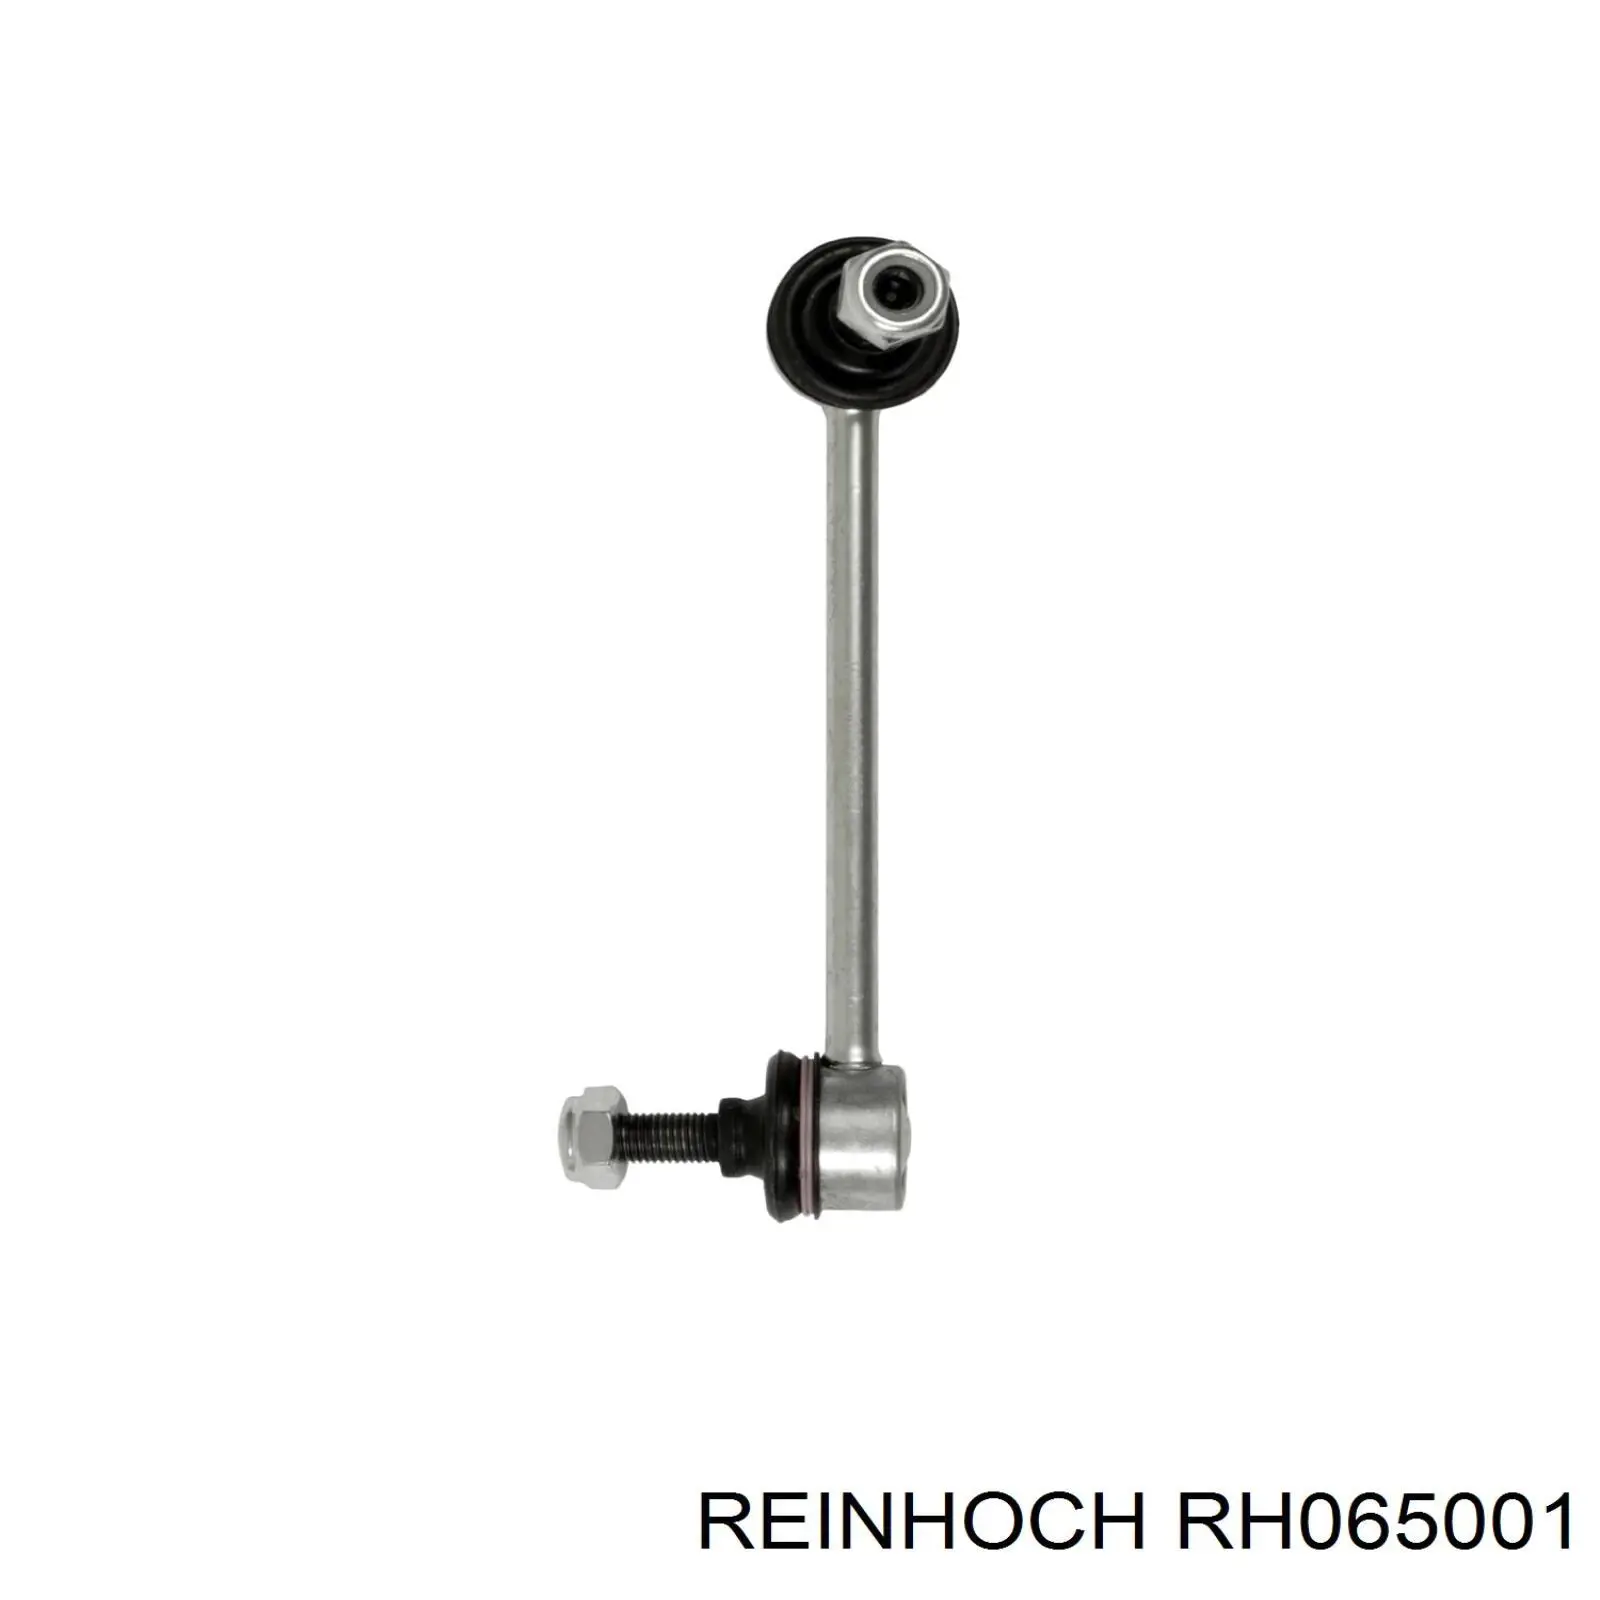 RH065001 Reinhoch barra estabilizadora delantera izquierda